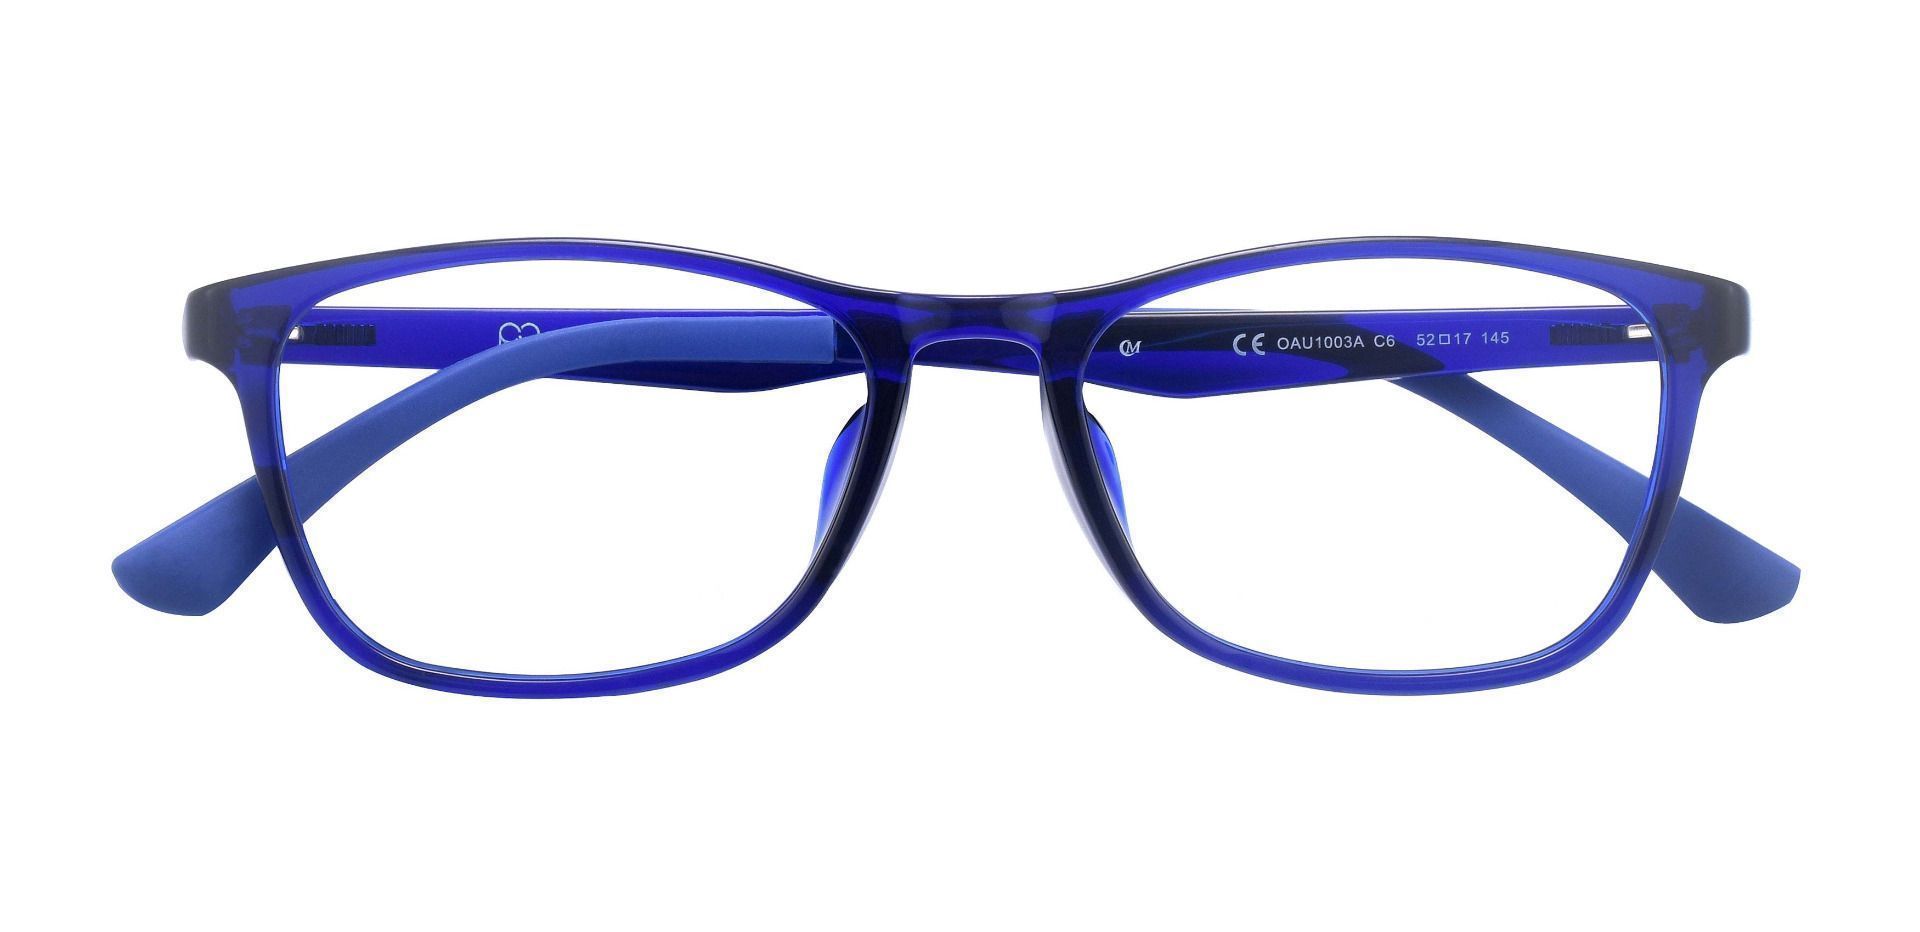 Merritt Rectangle Reading Glasses - Blue